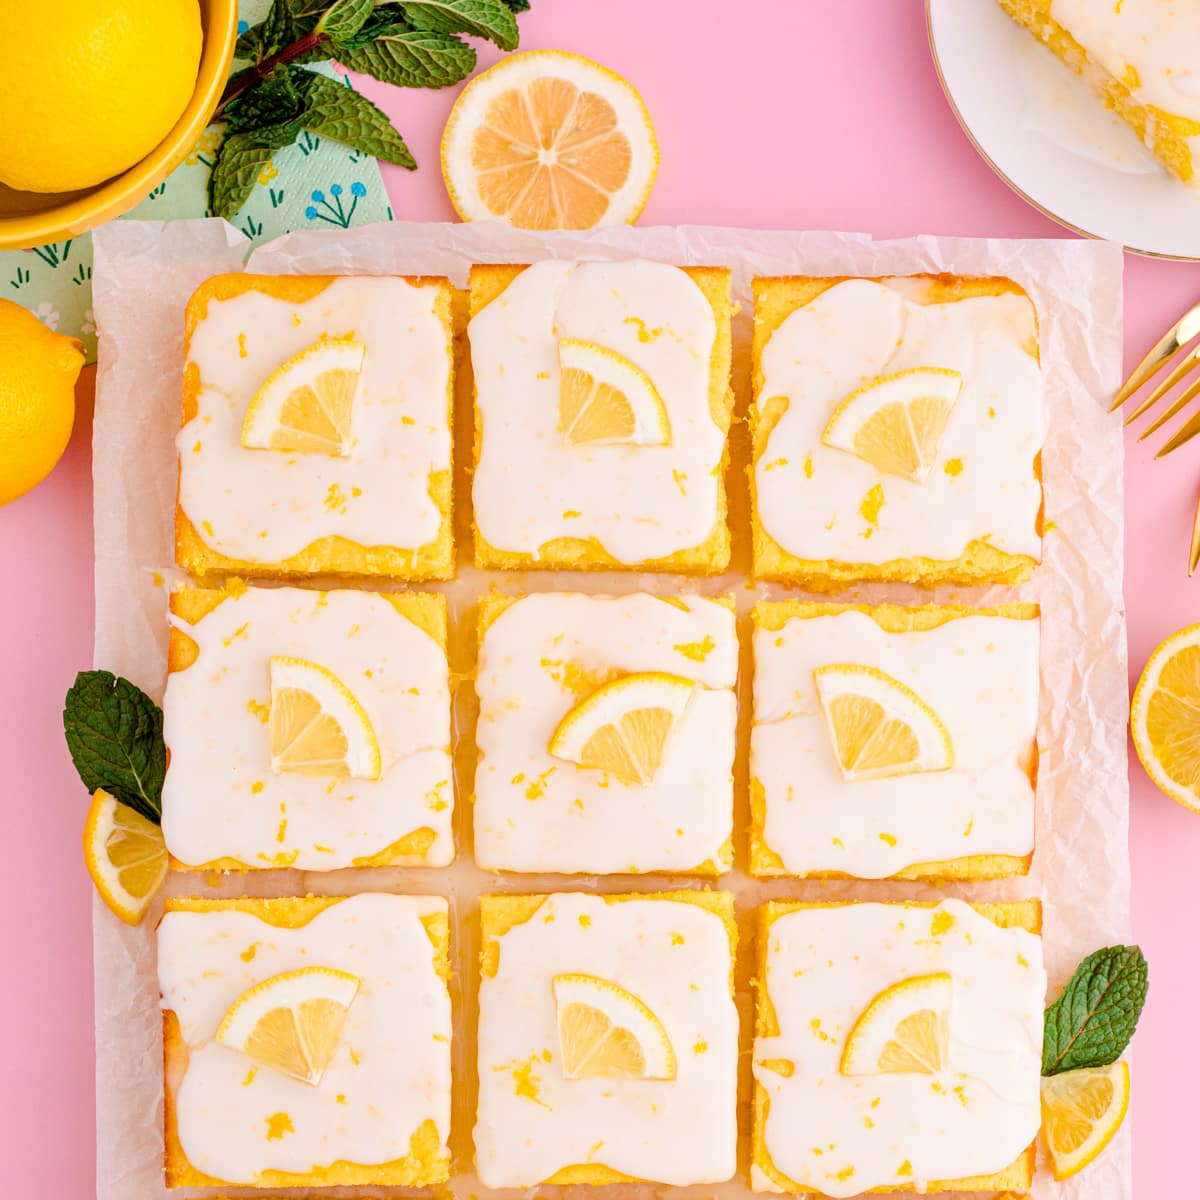 Easy lemon sheet cake slices on parment paper.